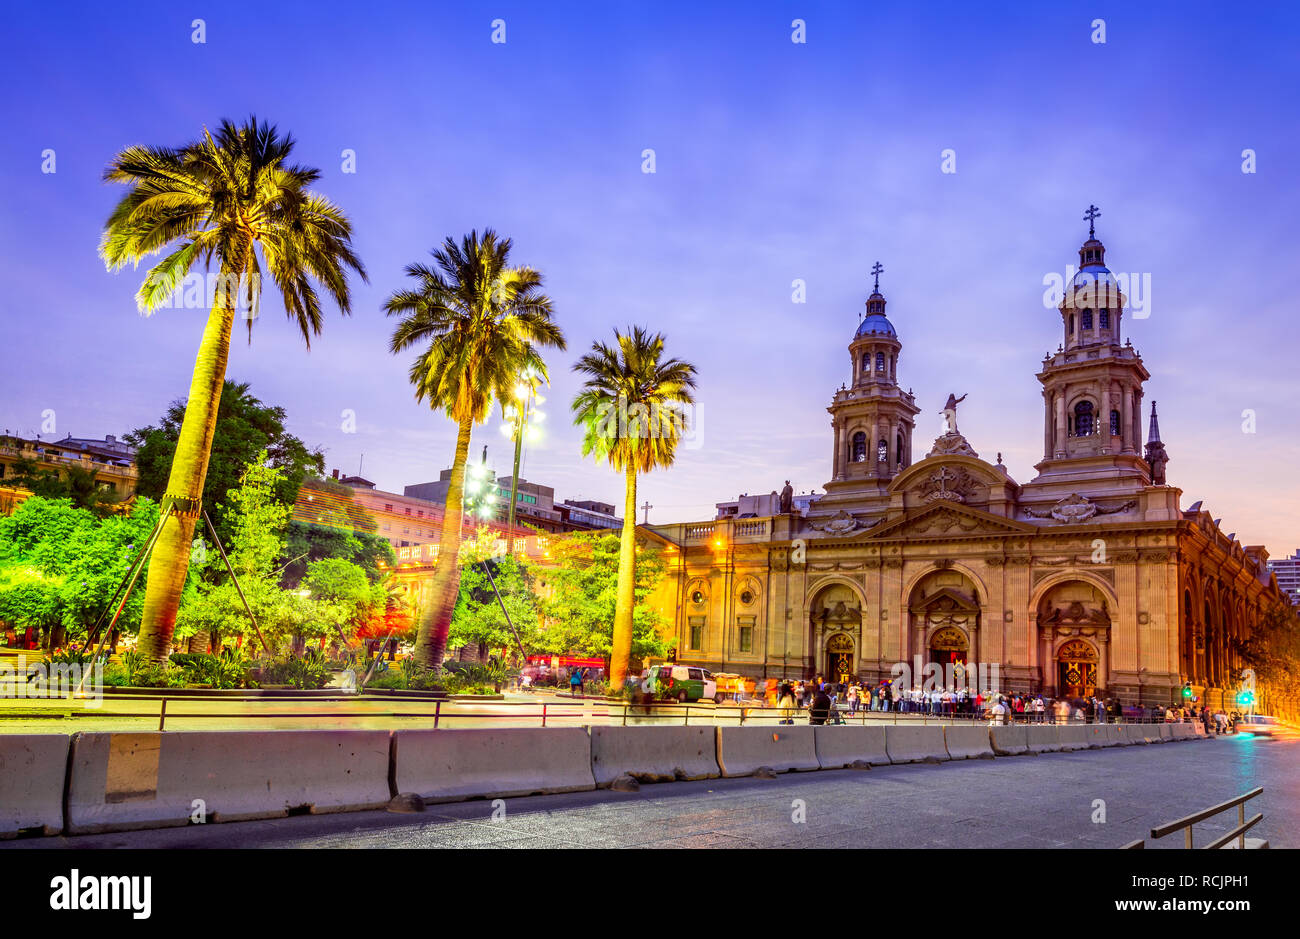 Santiago du Chili, la Plaza de Armas, la place principale de la capitale du Chili Banque D'Images